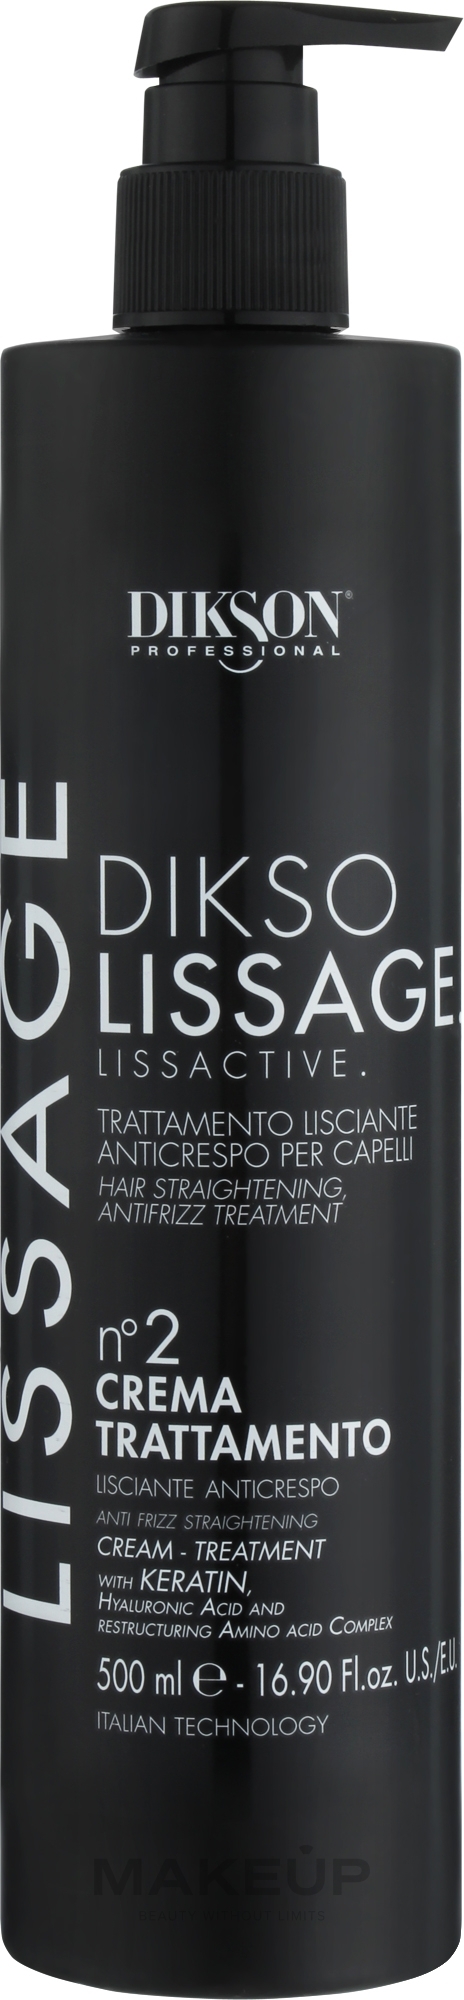 Розгладжувальний відновлювальний крем для волосся №2 - Dikson Diksolissage Lissactive Hair Straightening Treatment Cream — фото 500ml